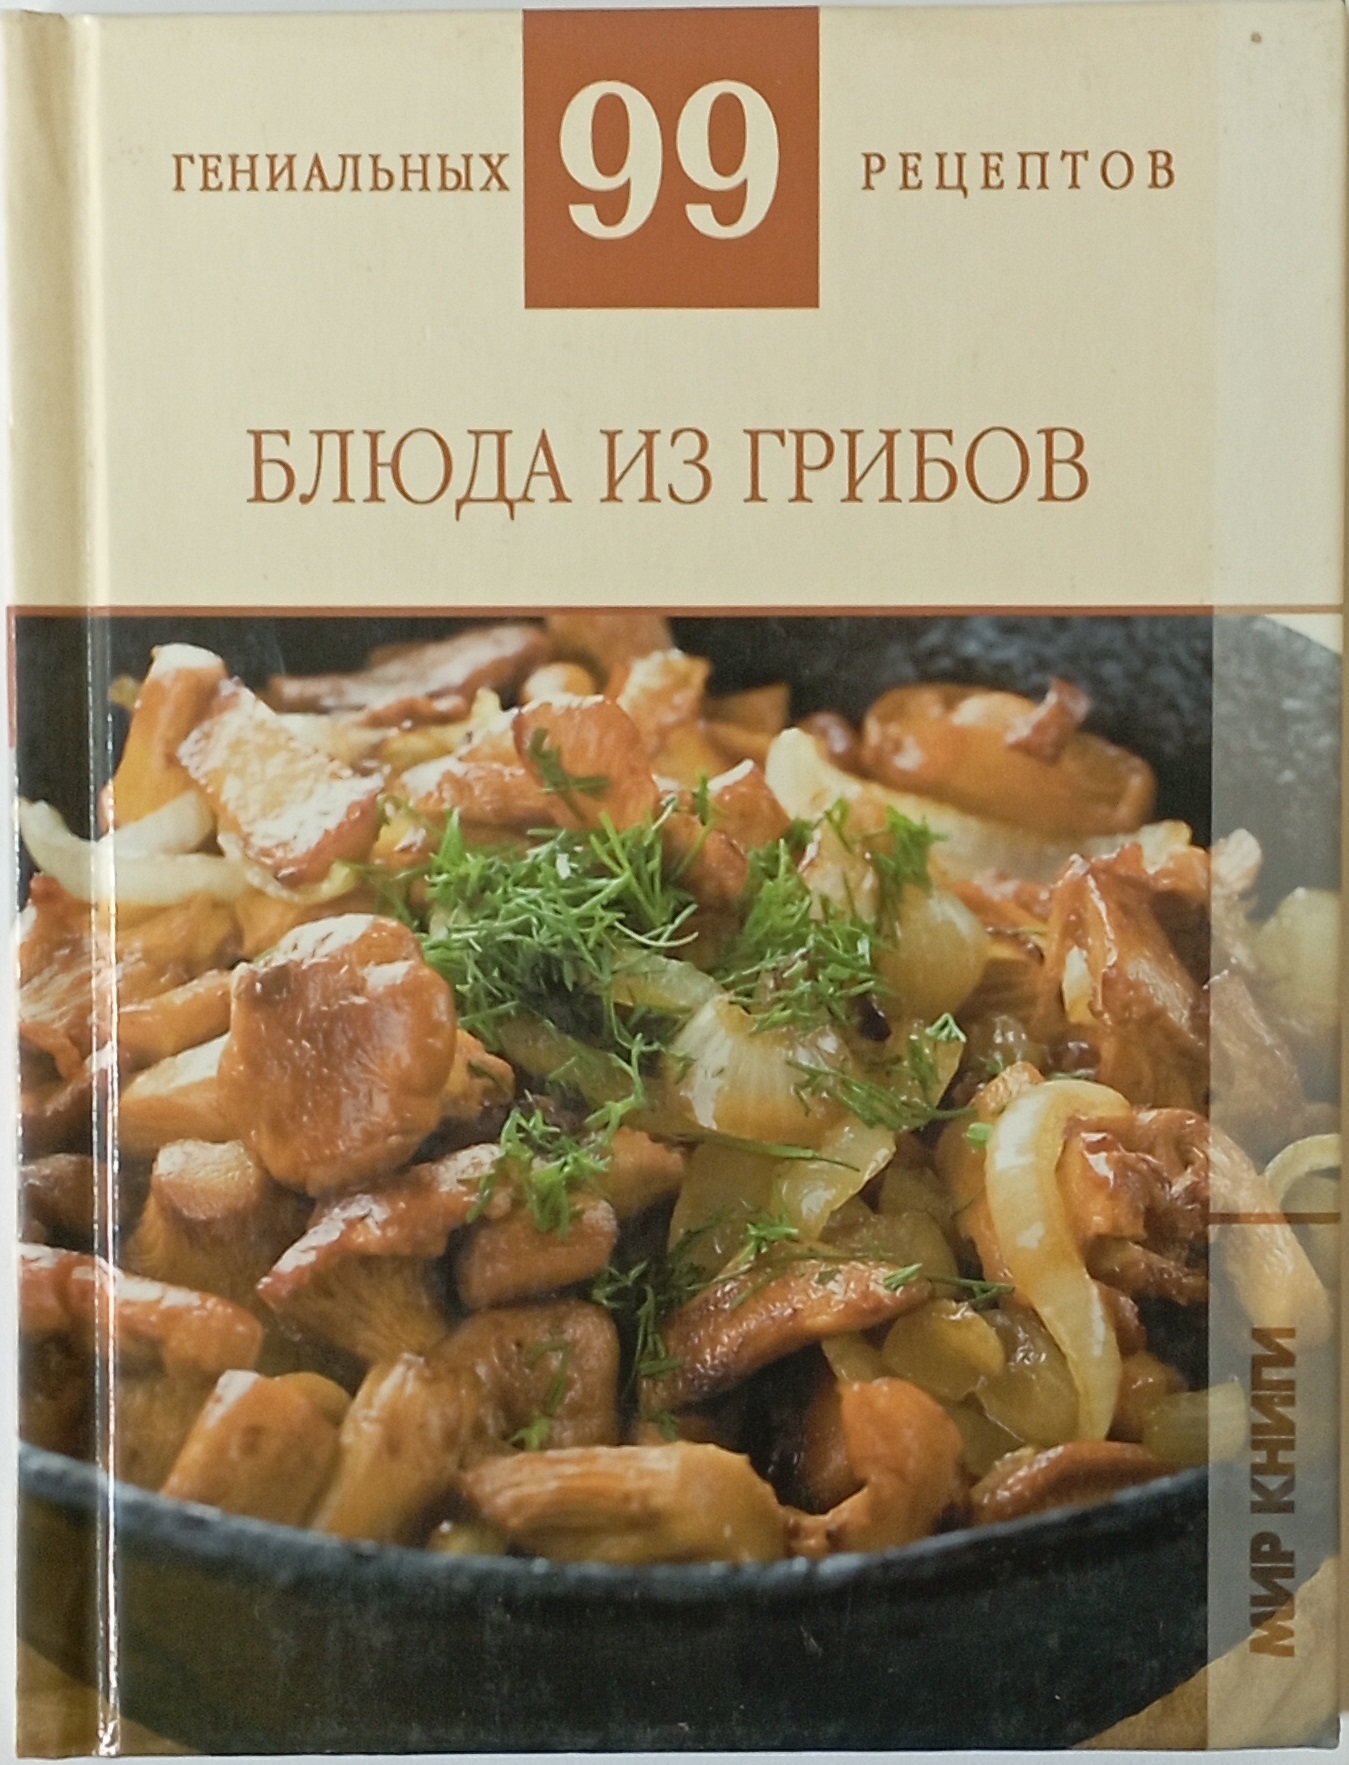 фото Книжка аст блюда из грибов аст_5